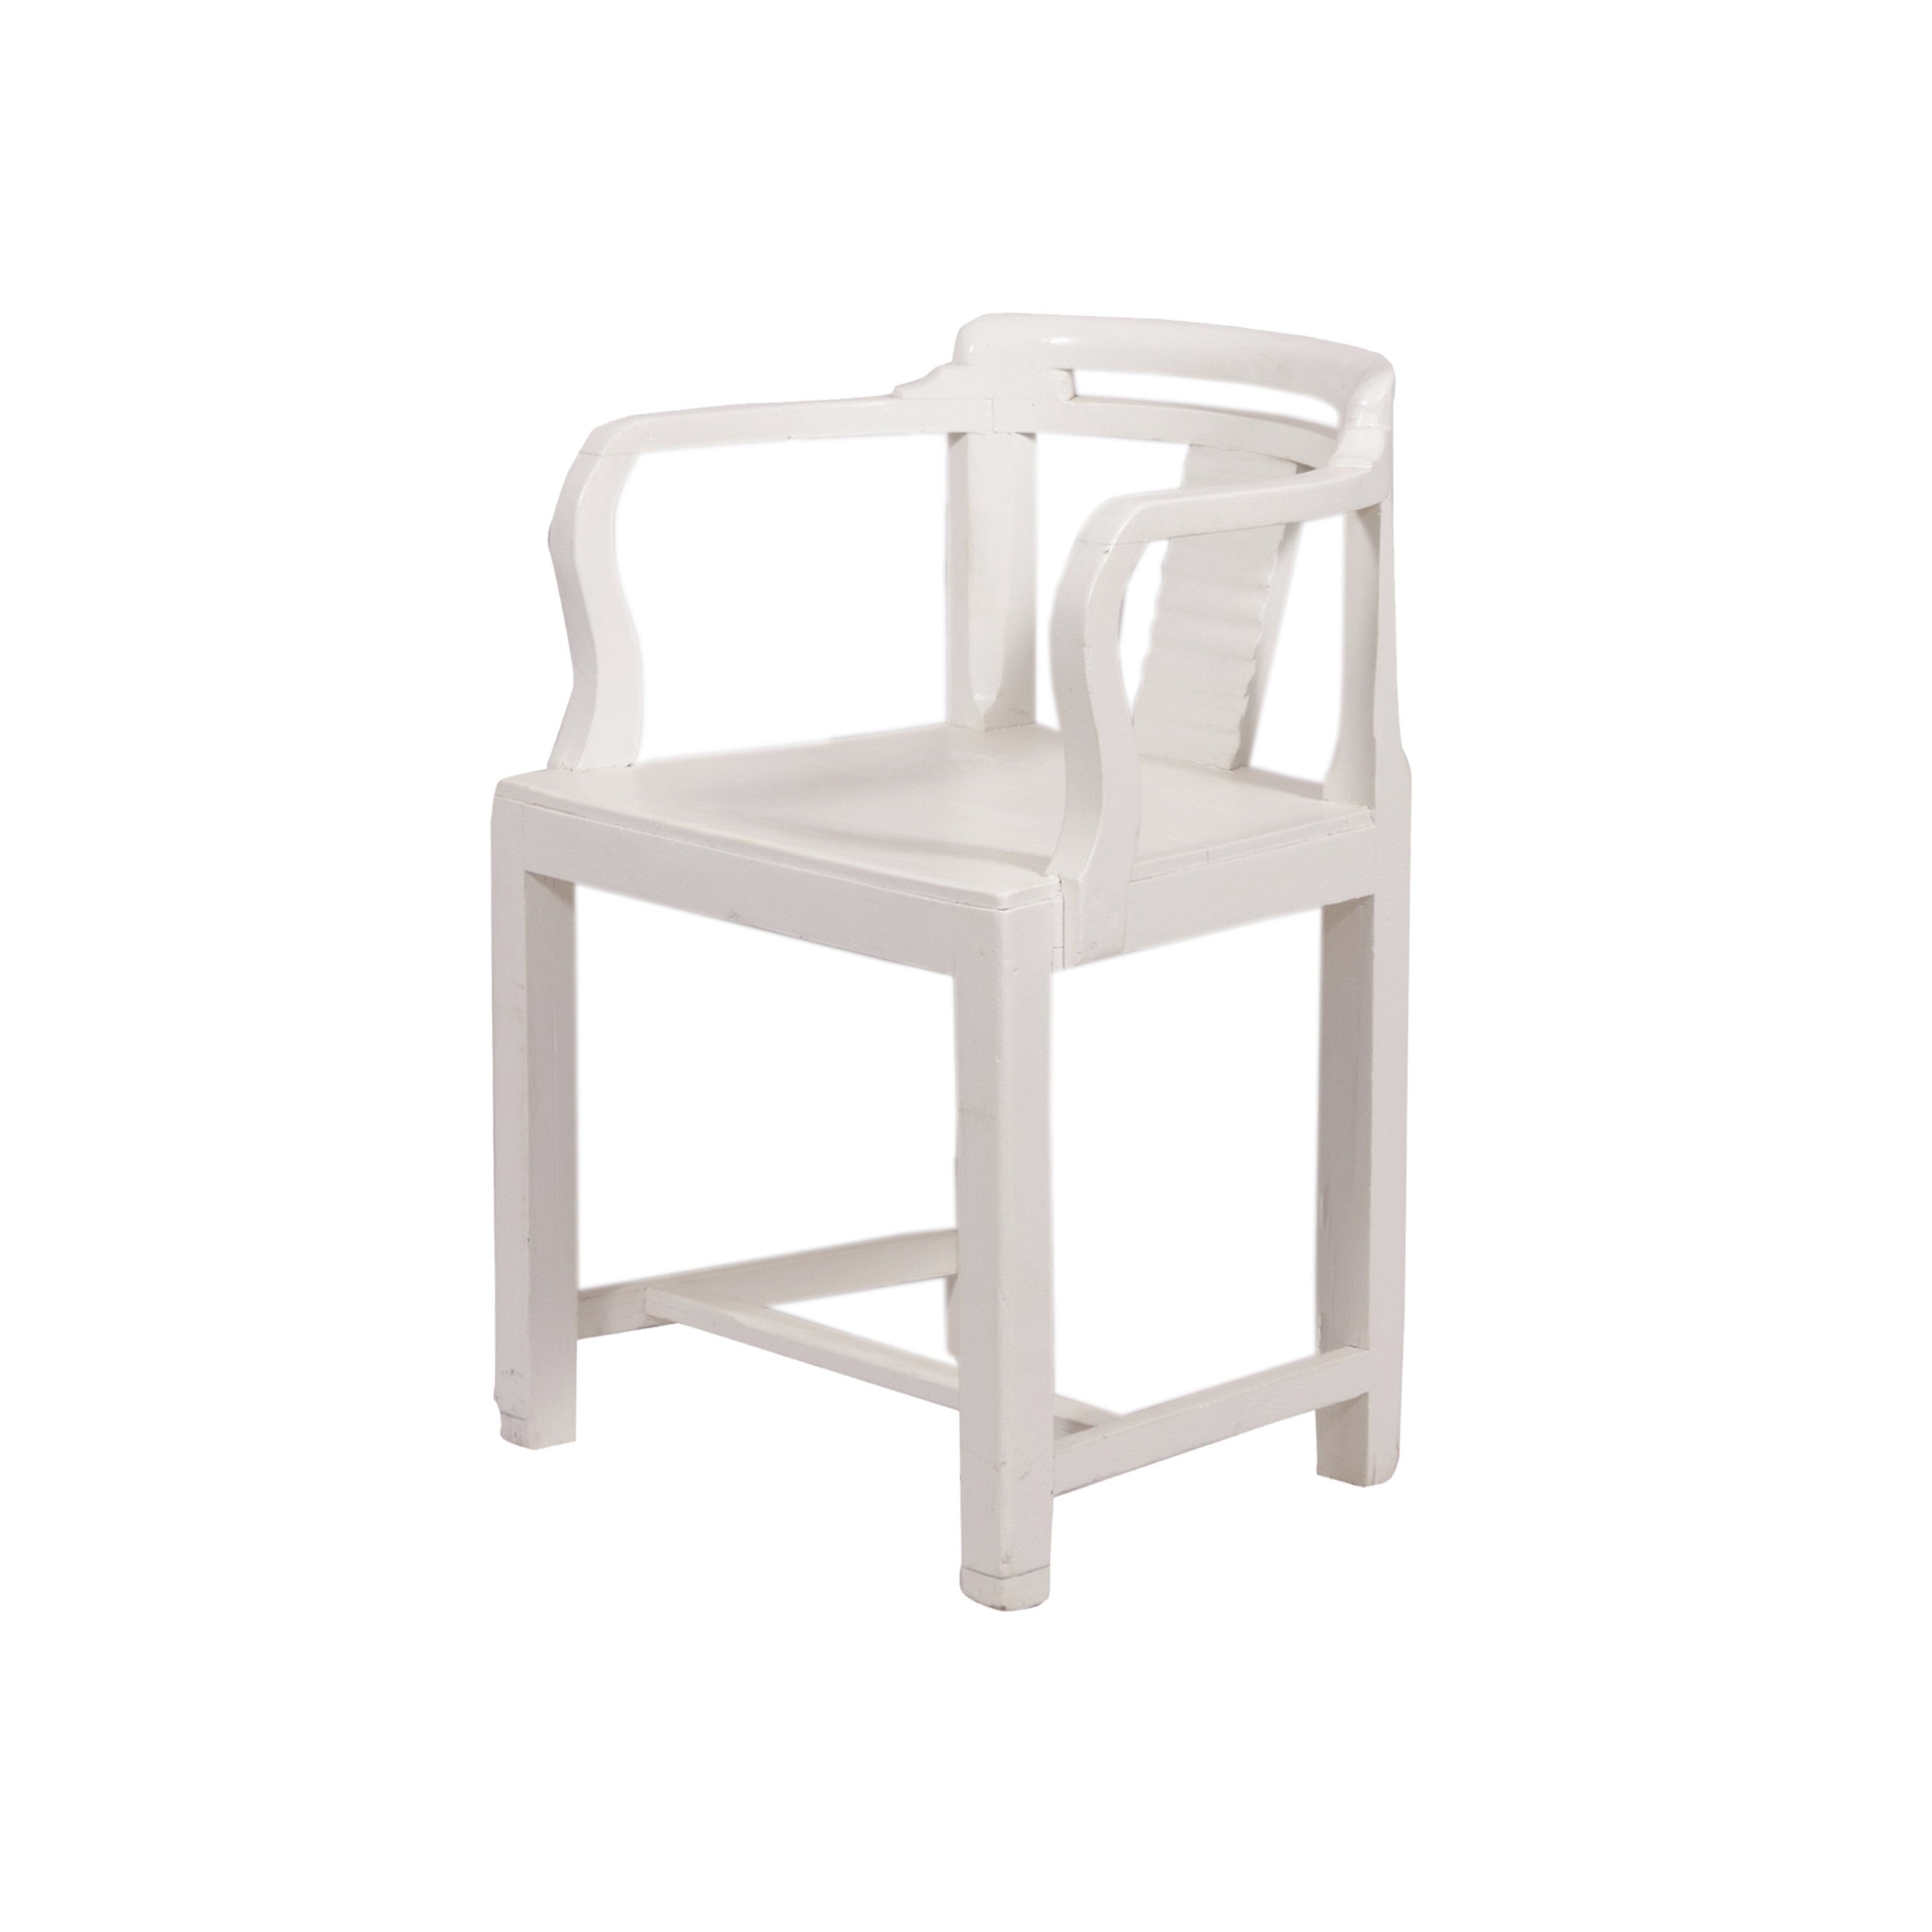 White Finish Arm Chair Arm Chair